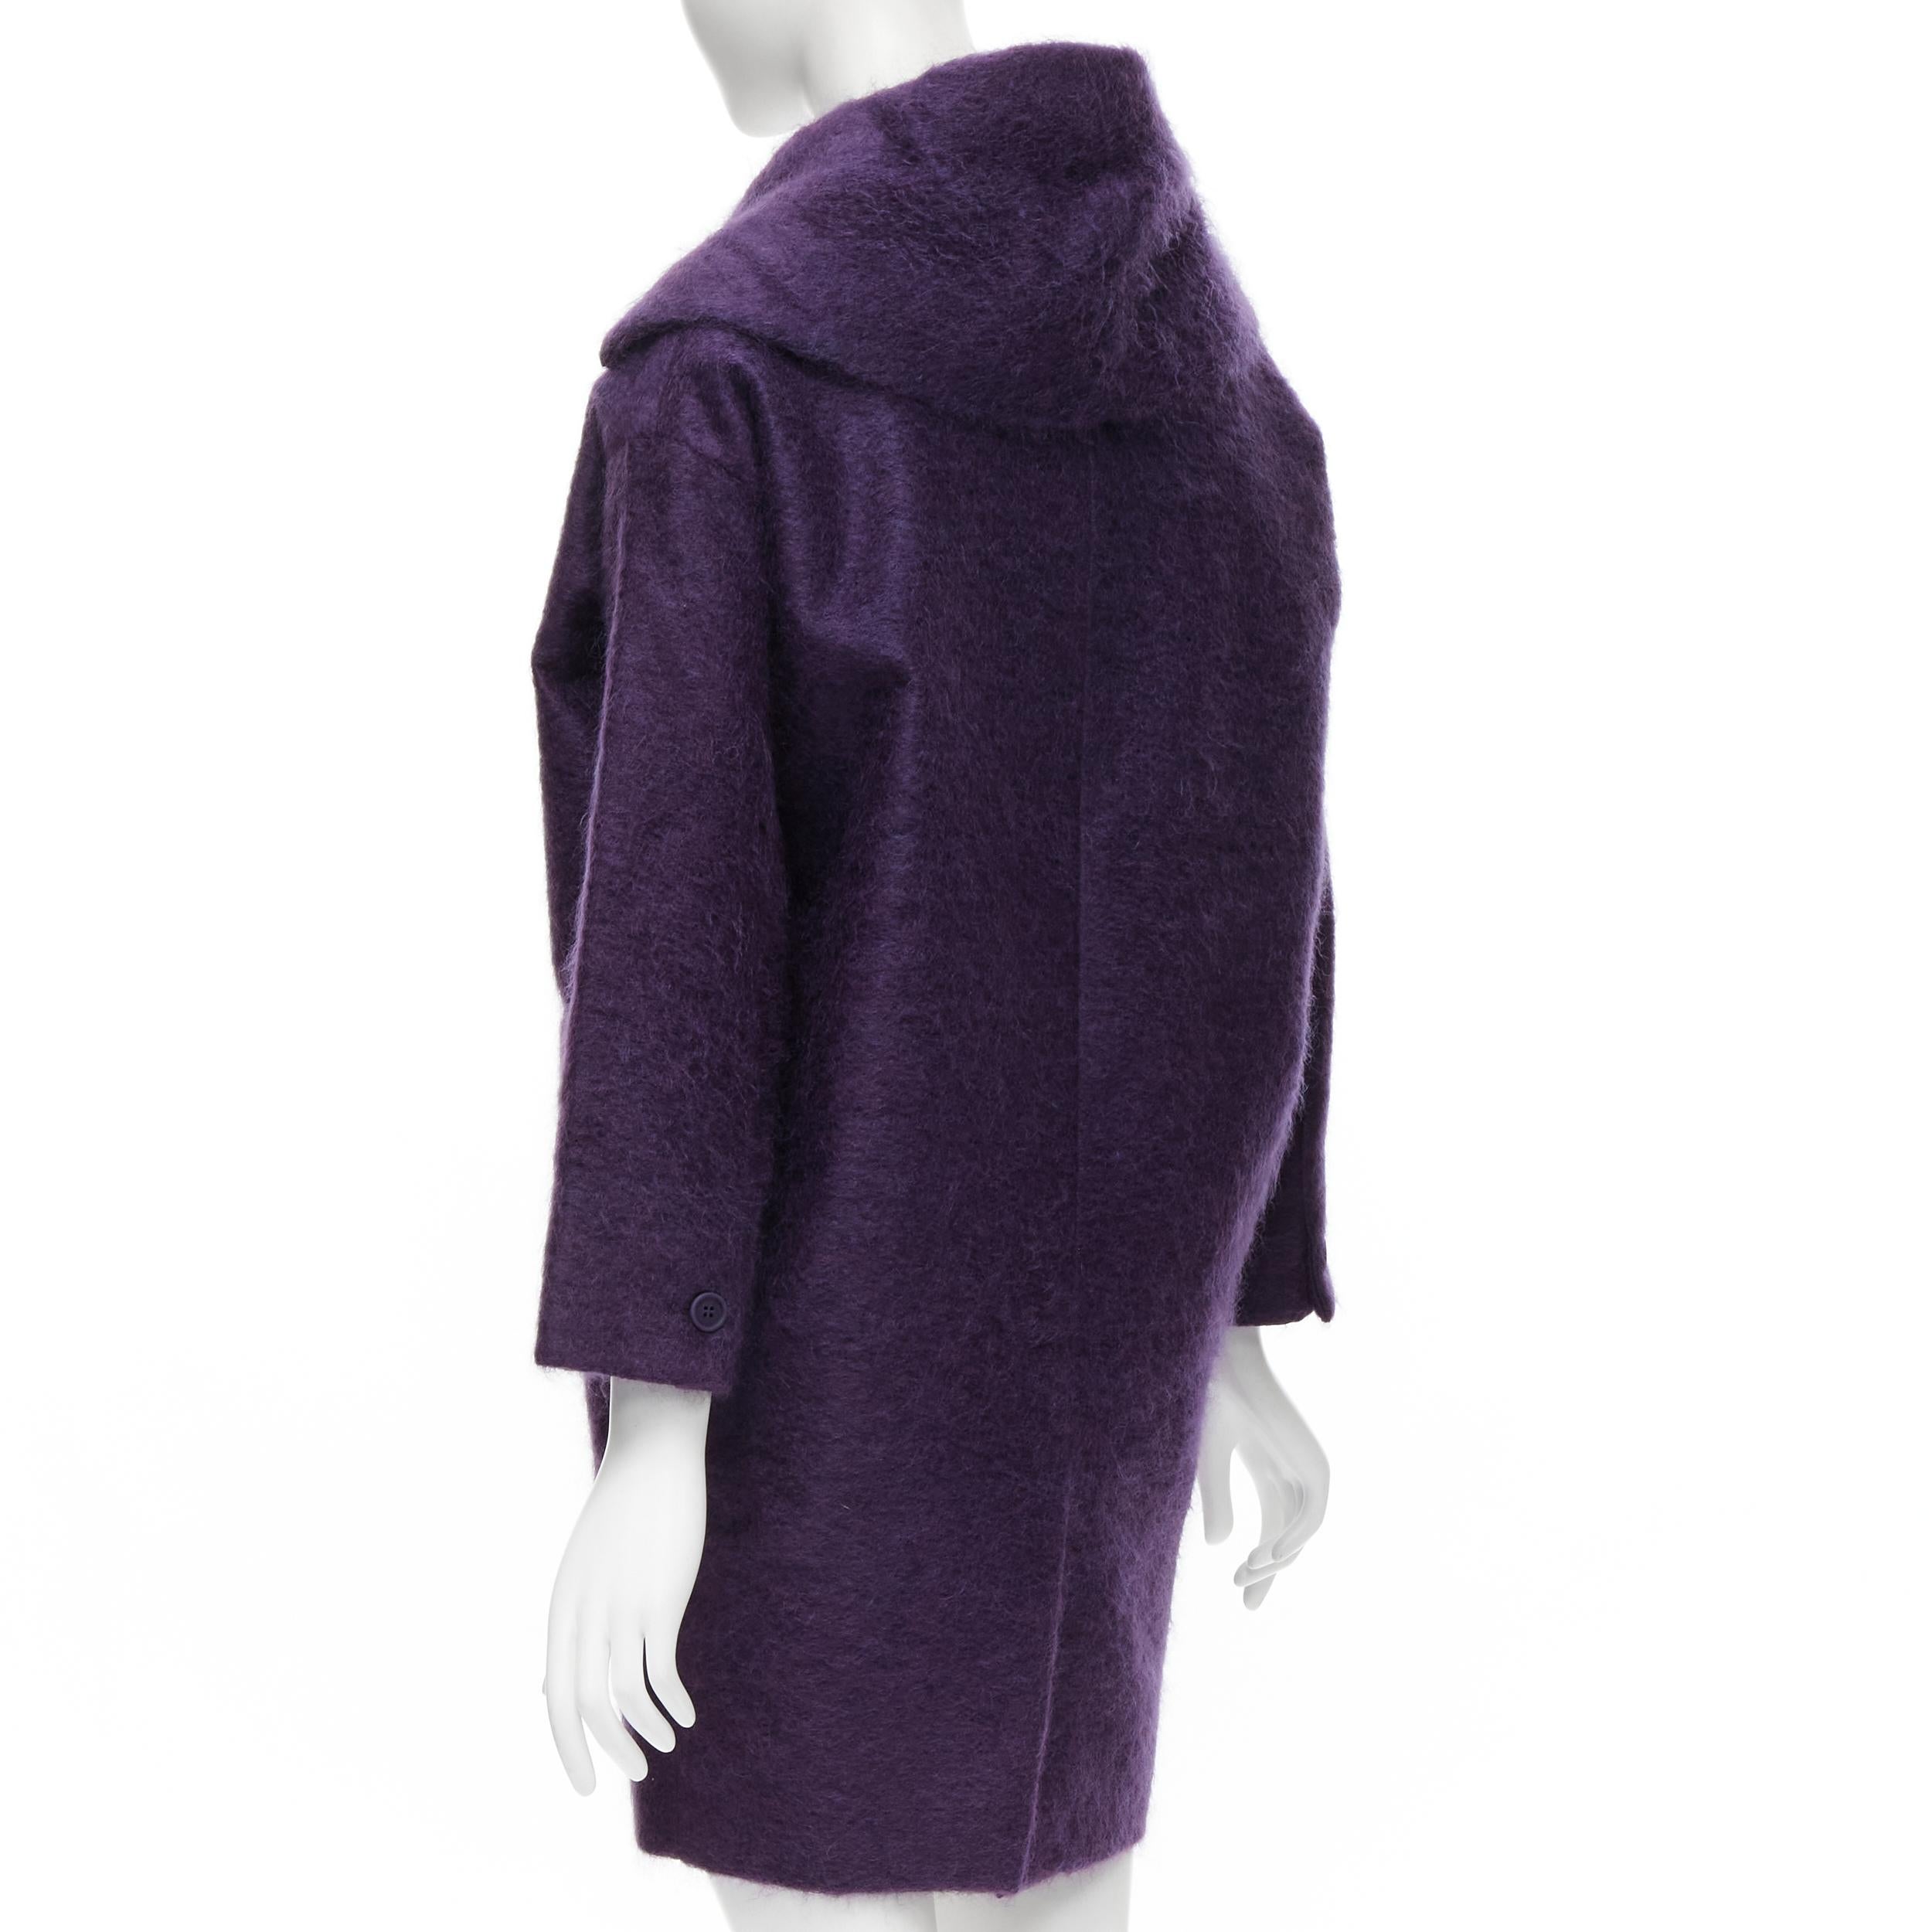 Black ROMEO GIGLI JOYCE purple fuzzy wool blend double berasted cocoon coat FR36 S